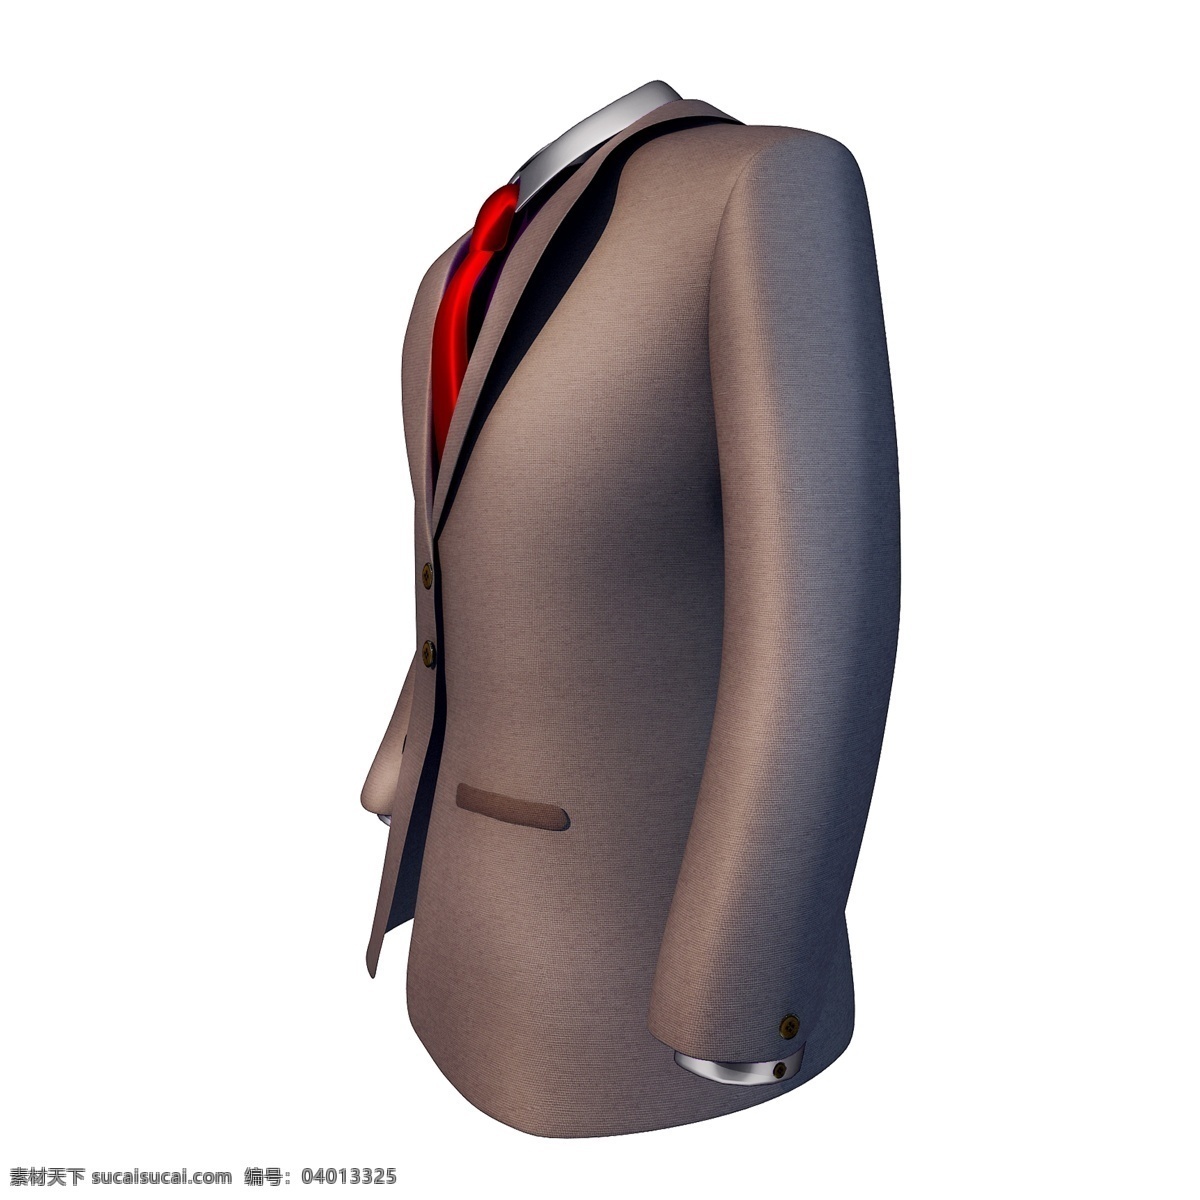 质感 棕色 西装 图 父亲节 新衣服 礼物 立体 仿真 3d 精致 领带 创意 套图 png图